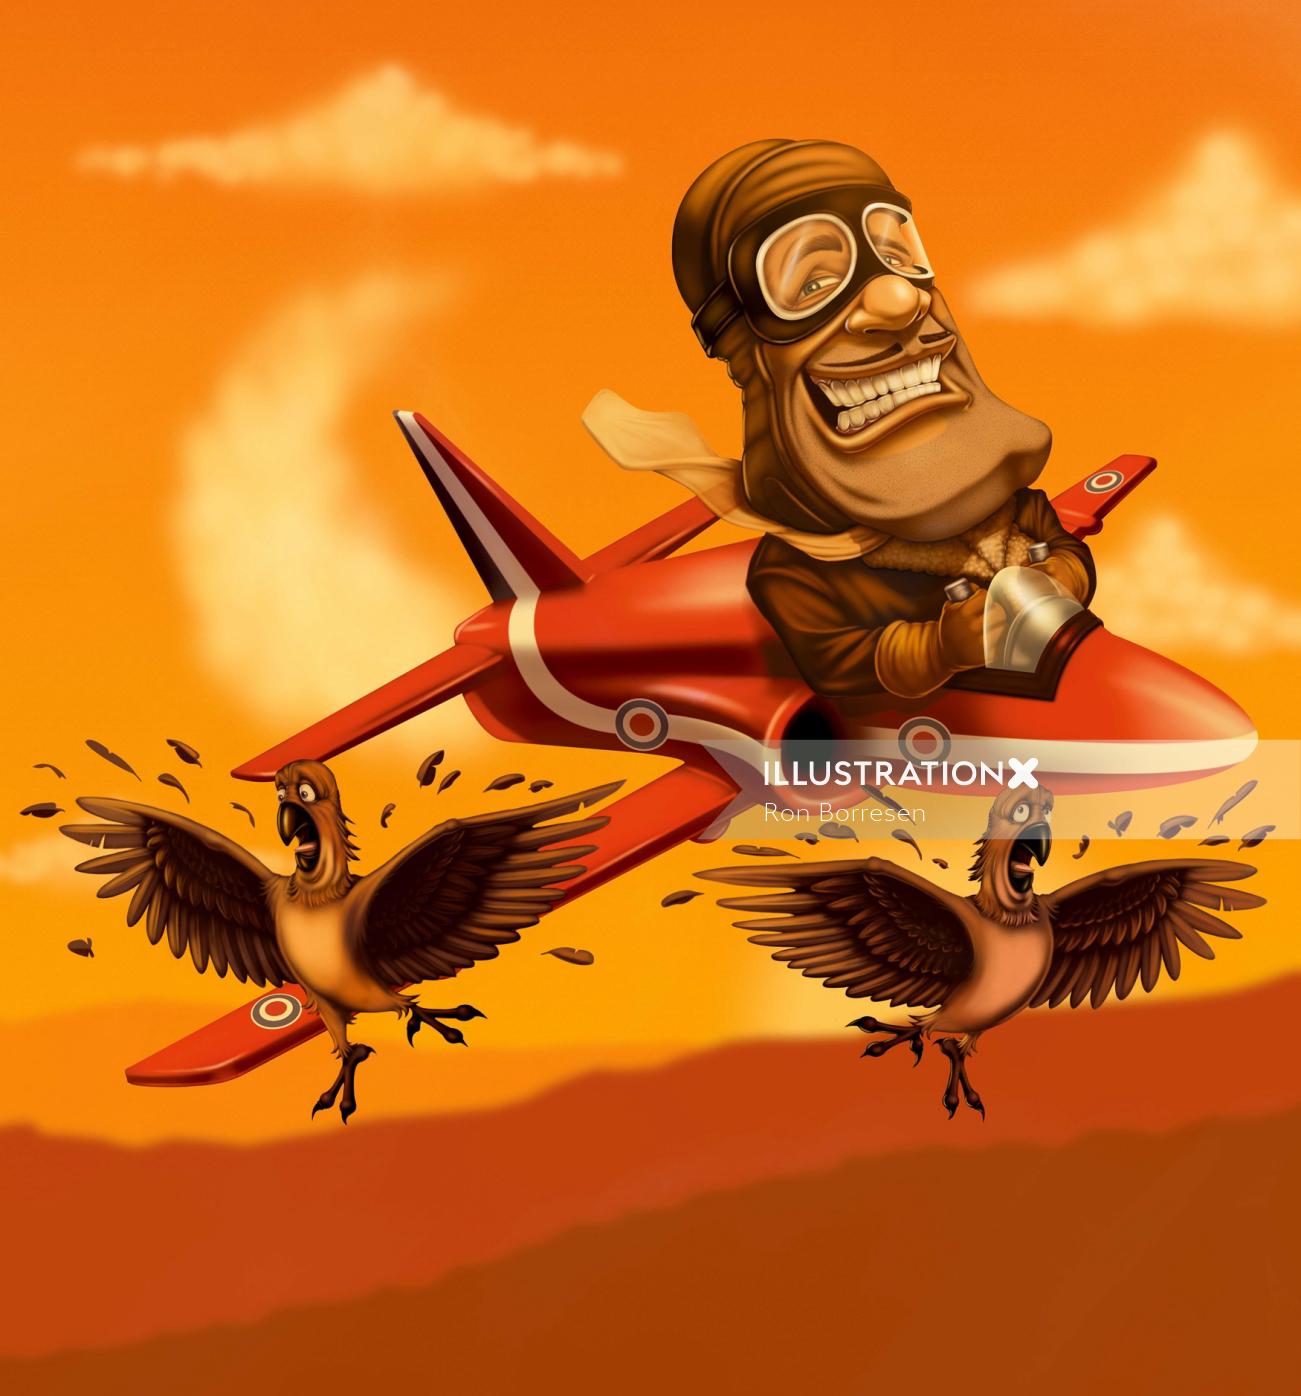 Arte em quadrinhos do piloto no avião - acerte a ilustração dos pássaros